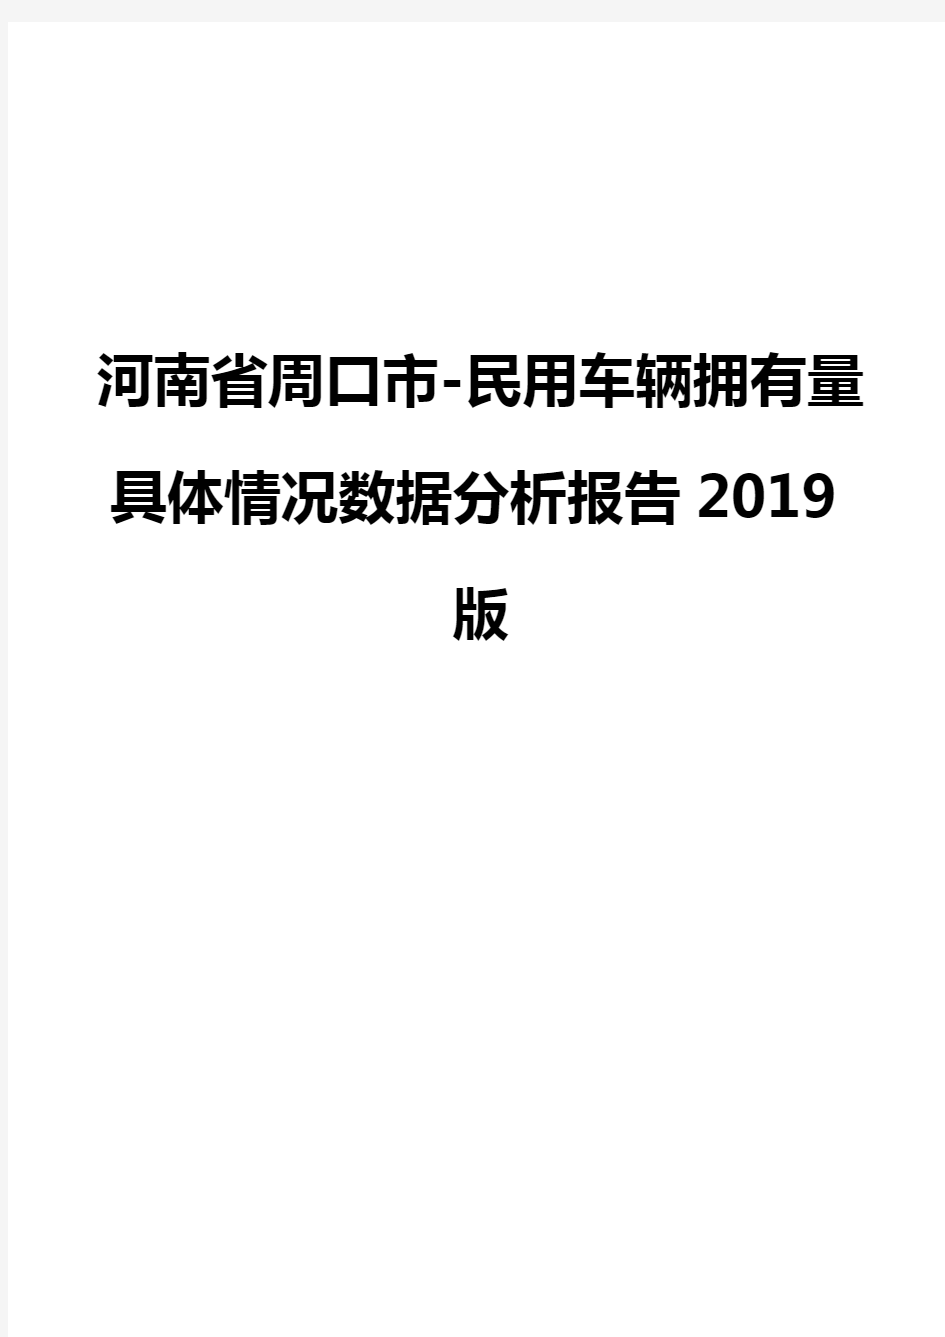 河南省周口市-民用车辆拥有量具体情况数据分析报告2019版